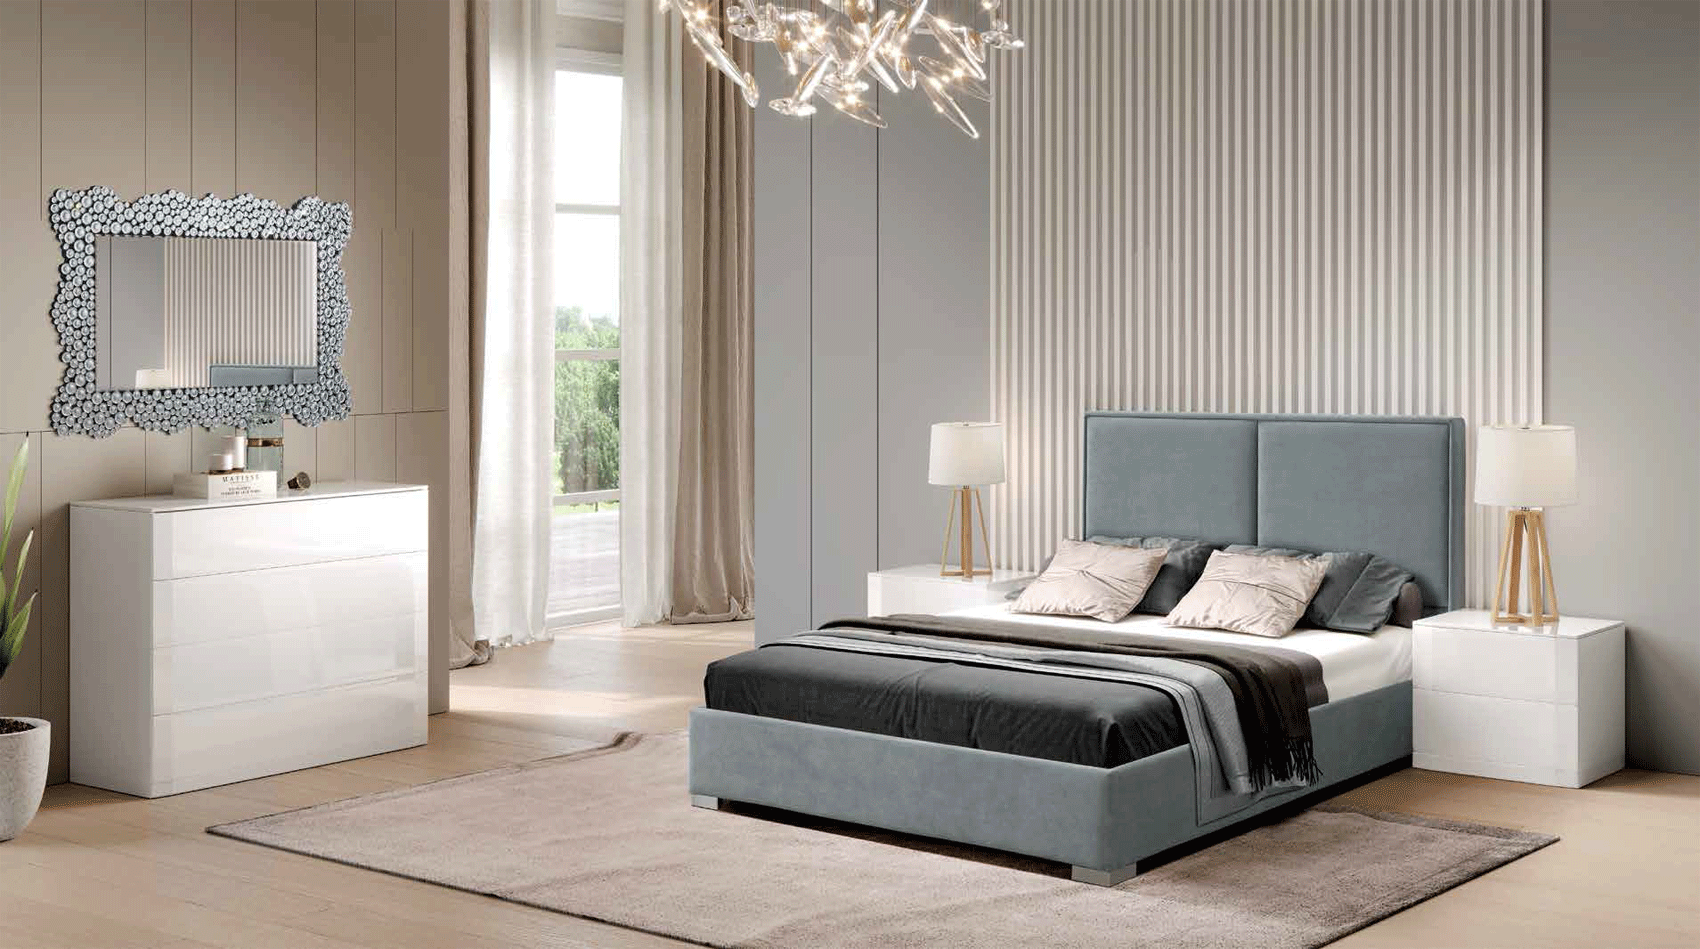 Bedroom Furniture Beds 400 CARMINA, M-102, C-102, E-415, LT-8067-G1